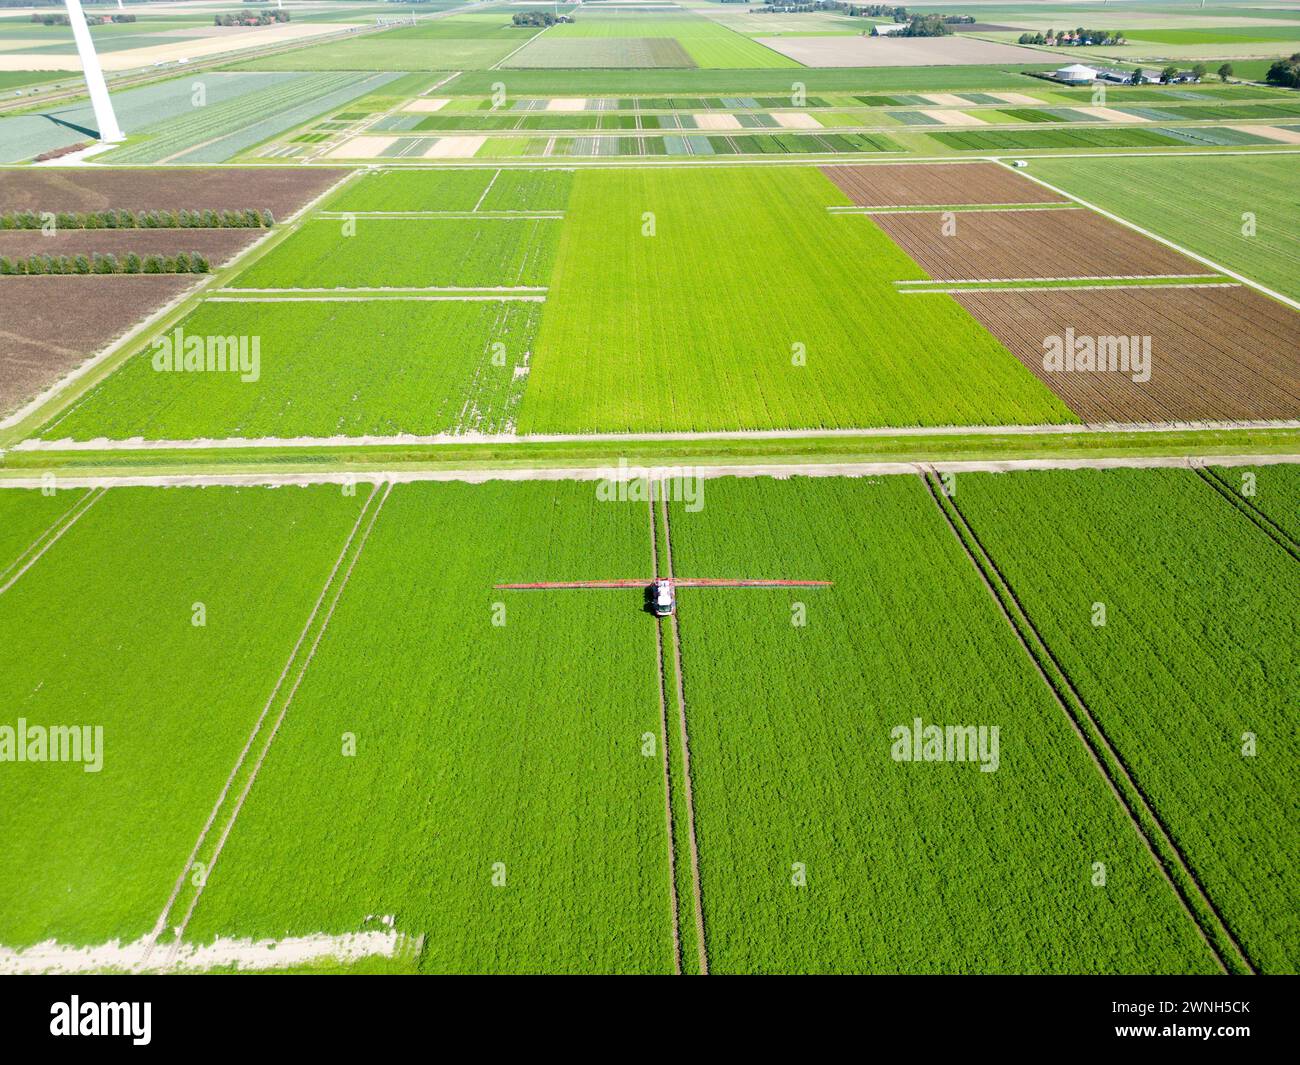 Luftaufnahme einer Maschine, die chemische Zusätze auf Feldfrüchte in einem landwirtschaftlichen Feld sprüht Stockfoto